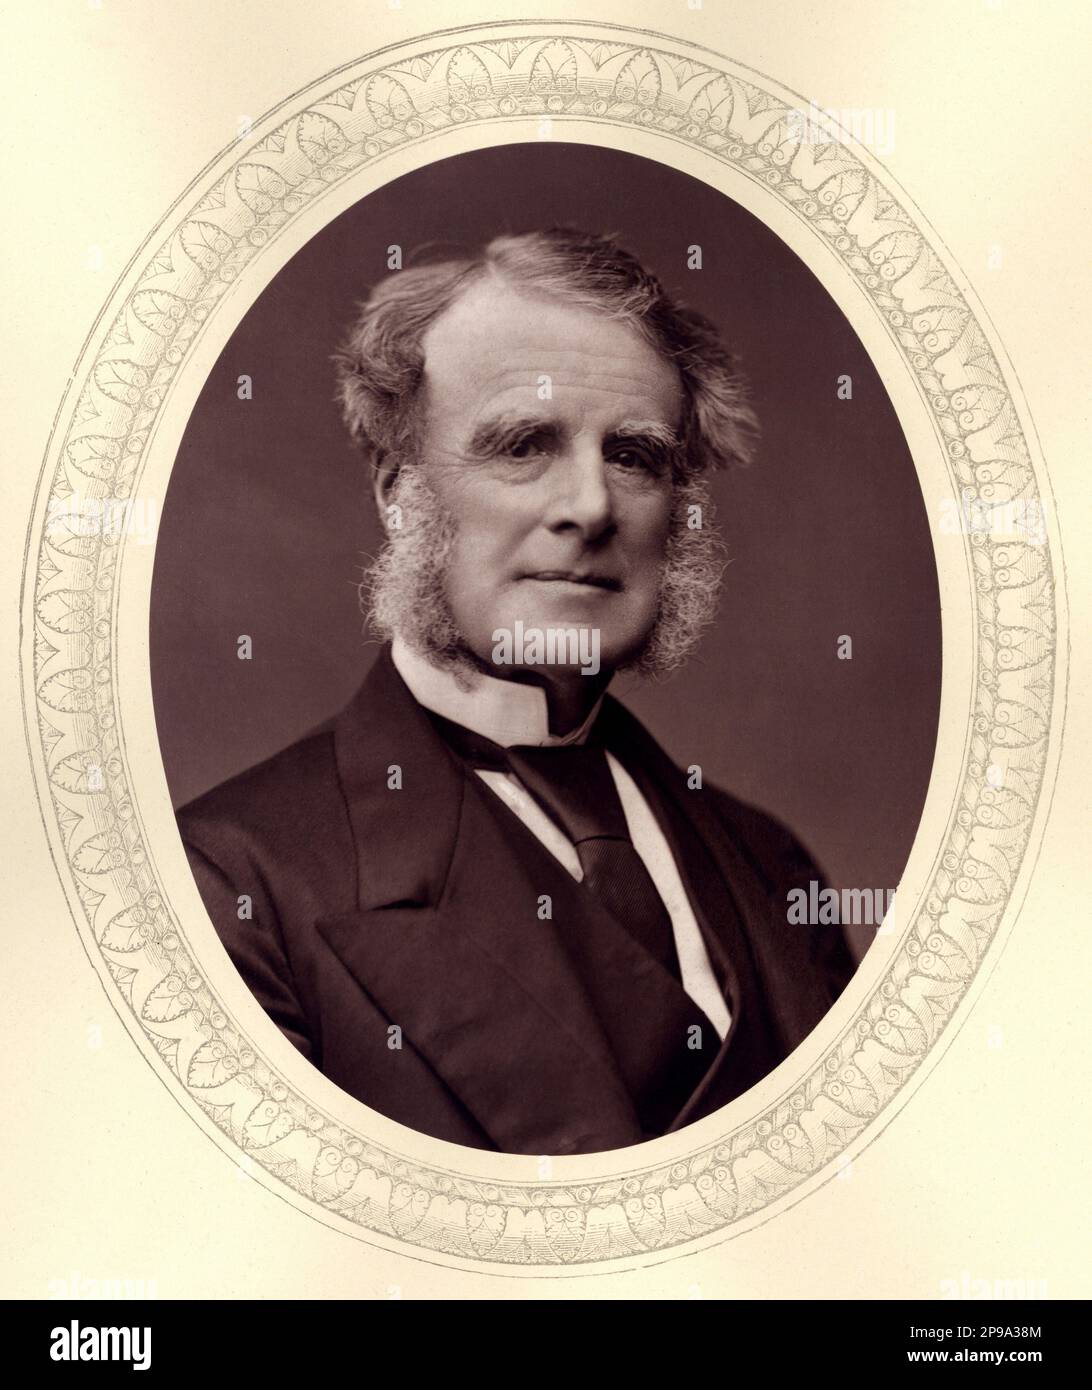 The british conservative politician Lord JOHN WILSON PATTEN  1st Baron WINMARLEIGH ( 1802 - 1892 ) - POLITICO - POLITICA - POLITIC  - foto storiche - foto storica - portrait - ritratto  - barba - beard  -basette -  NOBILI - NOBILITY - Nobiltà  - WILSON-PATTEN  - Barone  - uomo anziano vecchio - older man - tie - cravatta - colletto - collar ----   Archivio GBB Stock Photo